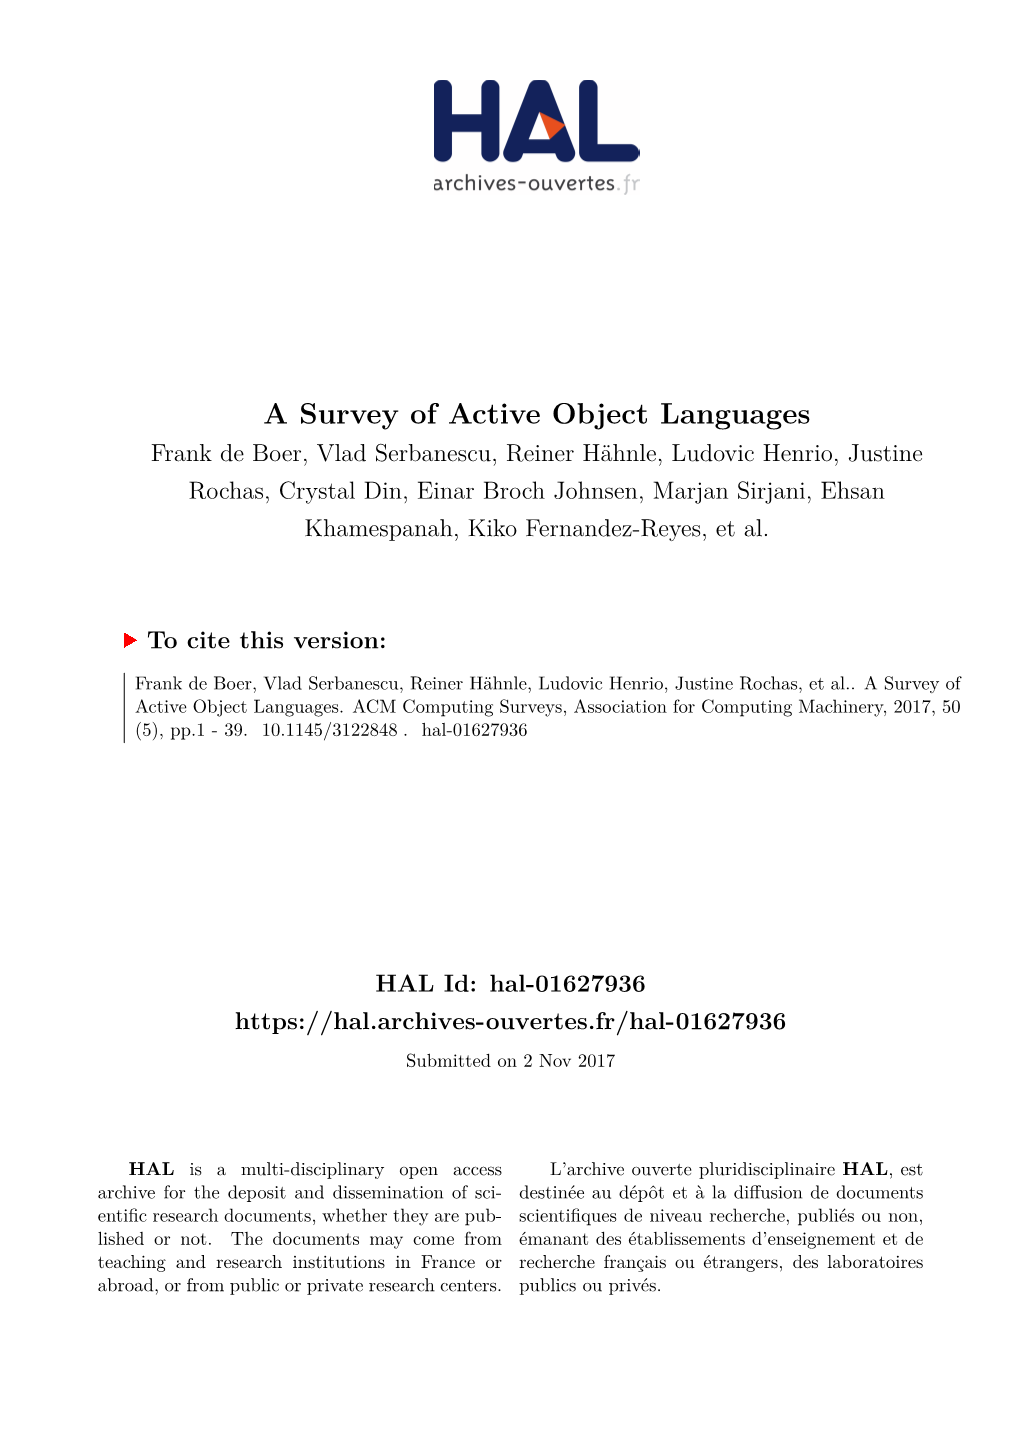 A Survey of Active Object Languages